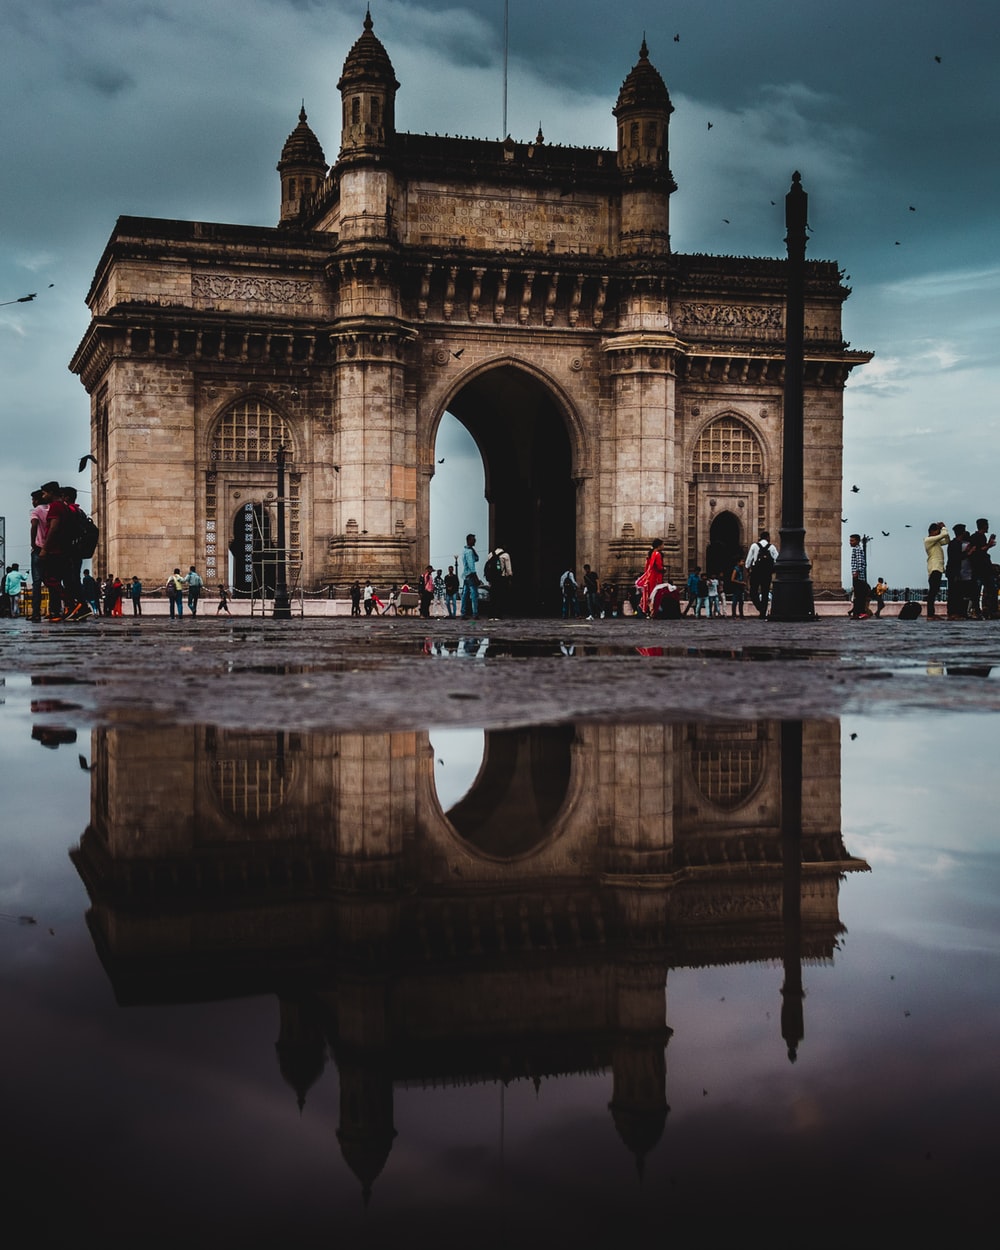 Stunning Mumbai Pictures HD Image